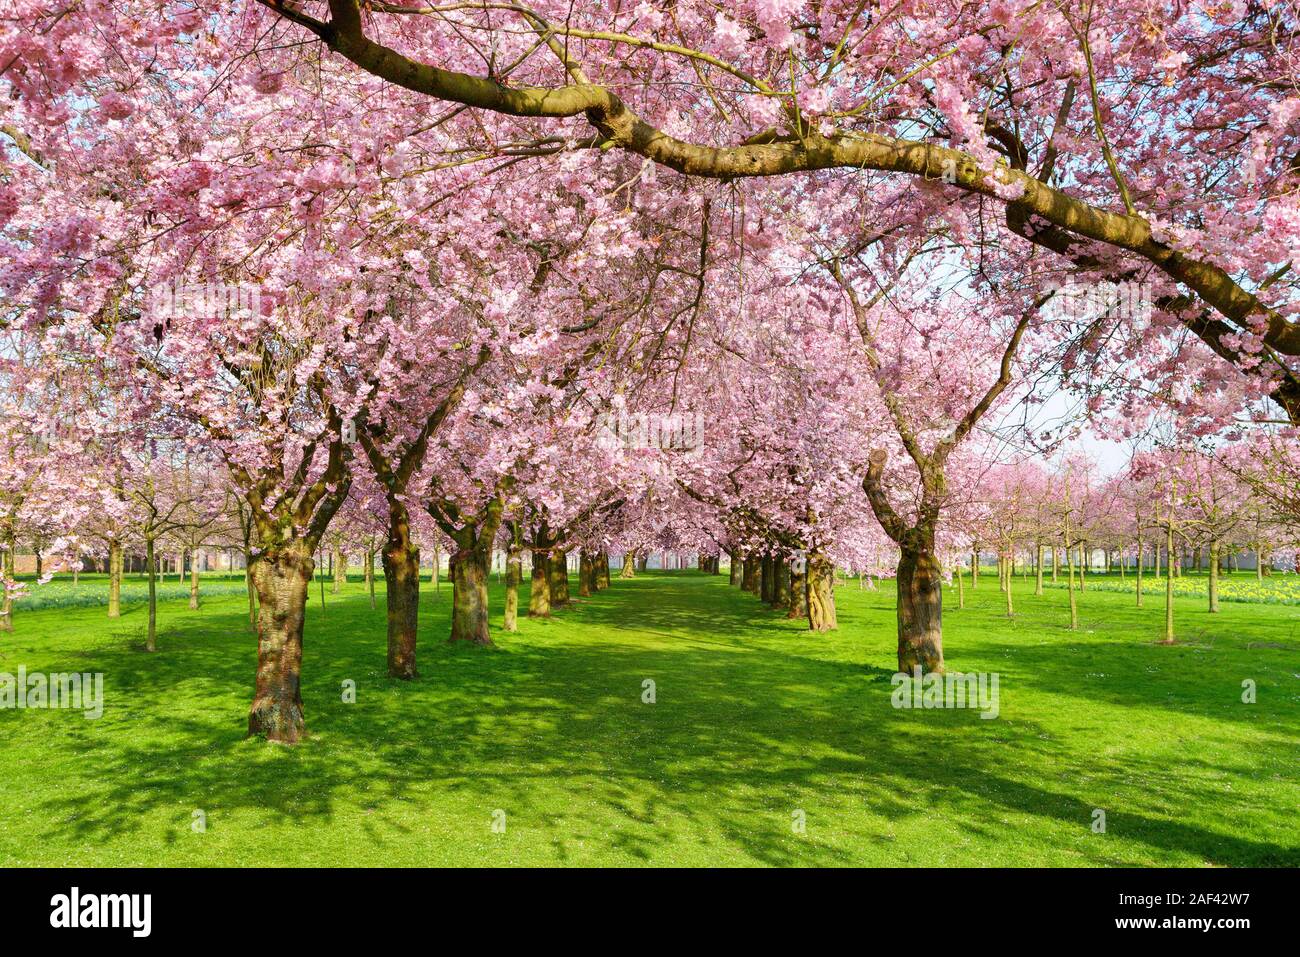 Malerische park mit Zeilen der blühenden Kirschbäume im Frühling auf einem frischen grünen Rasen, Schuß an einem schönen sonnigen Tag Stockfoto